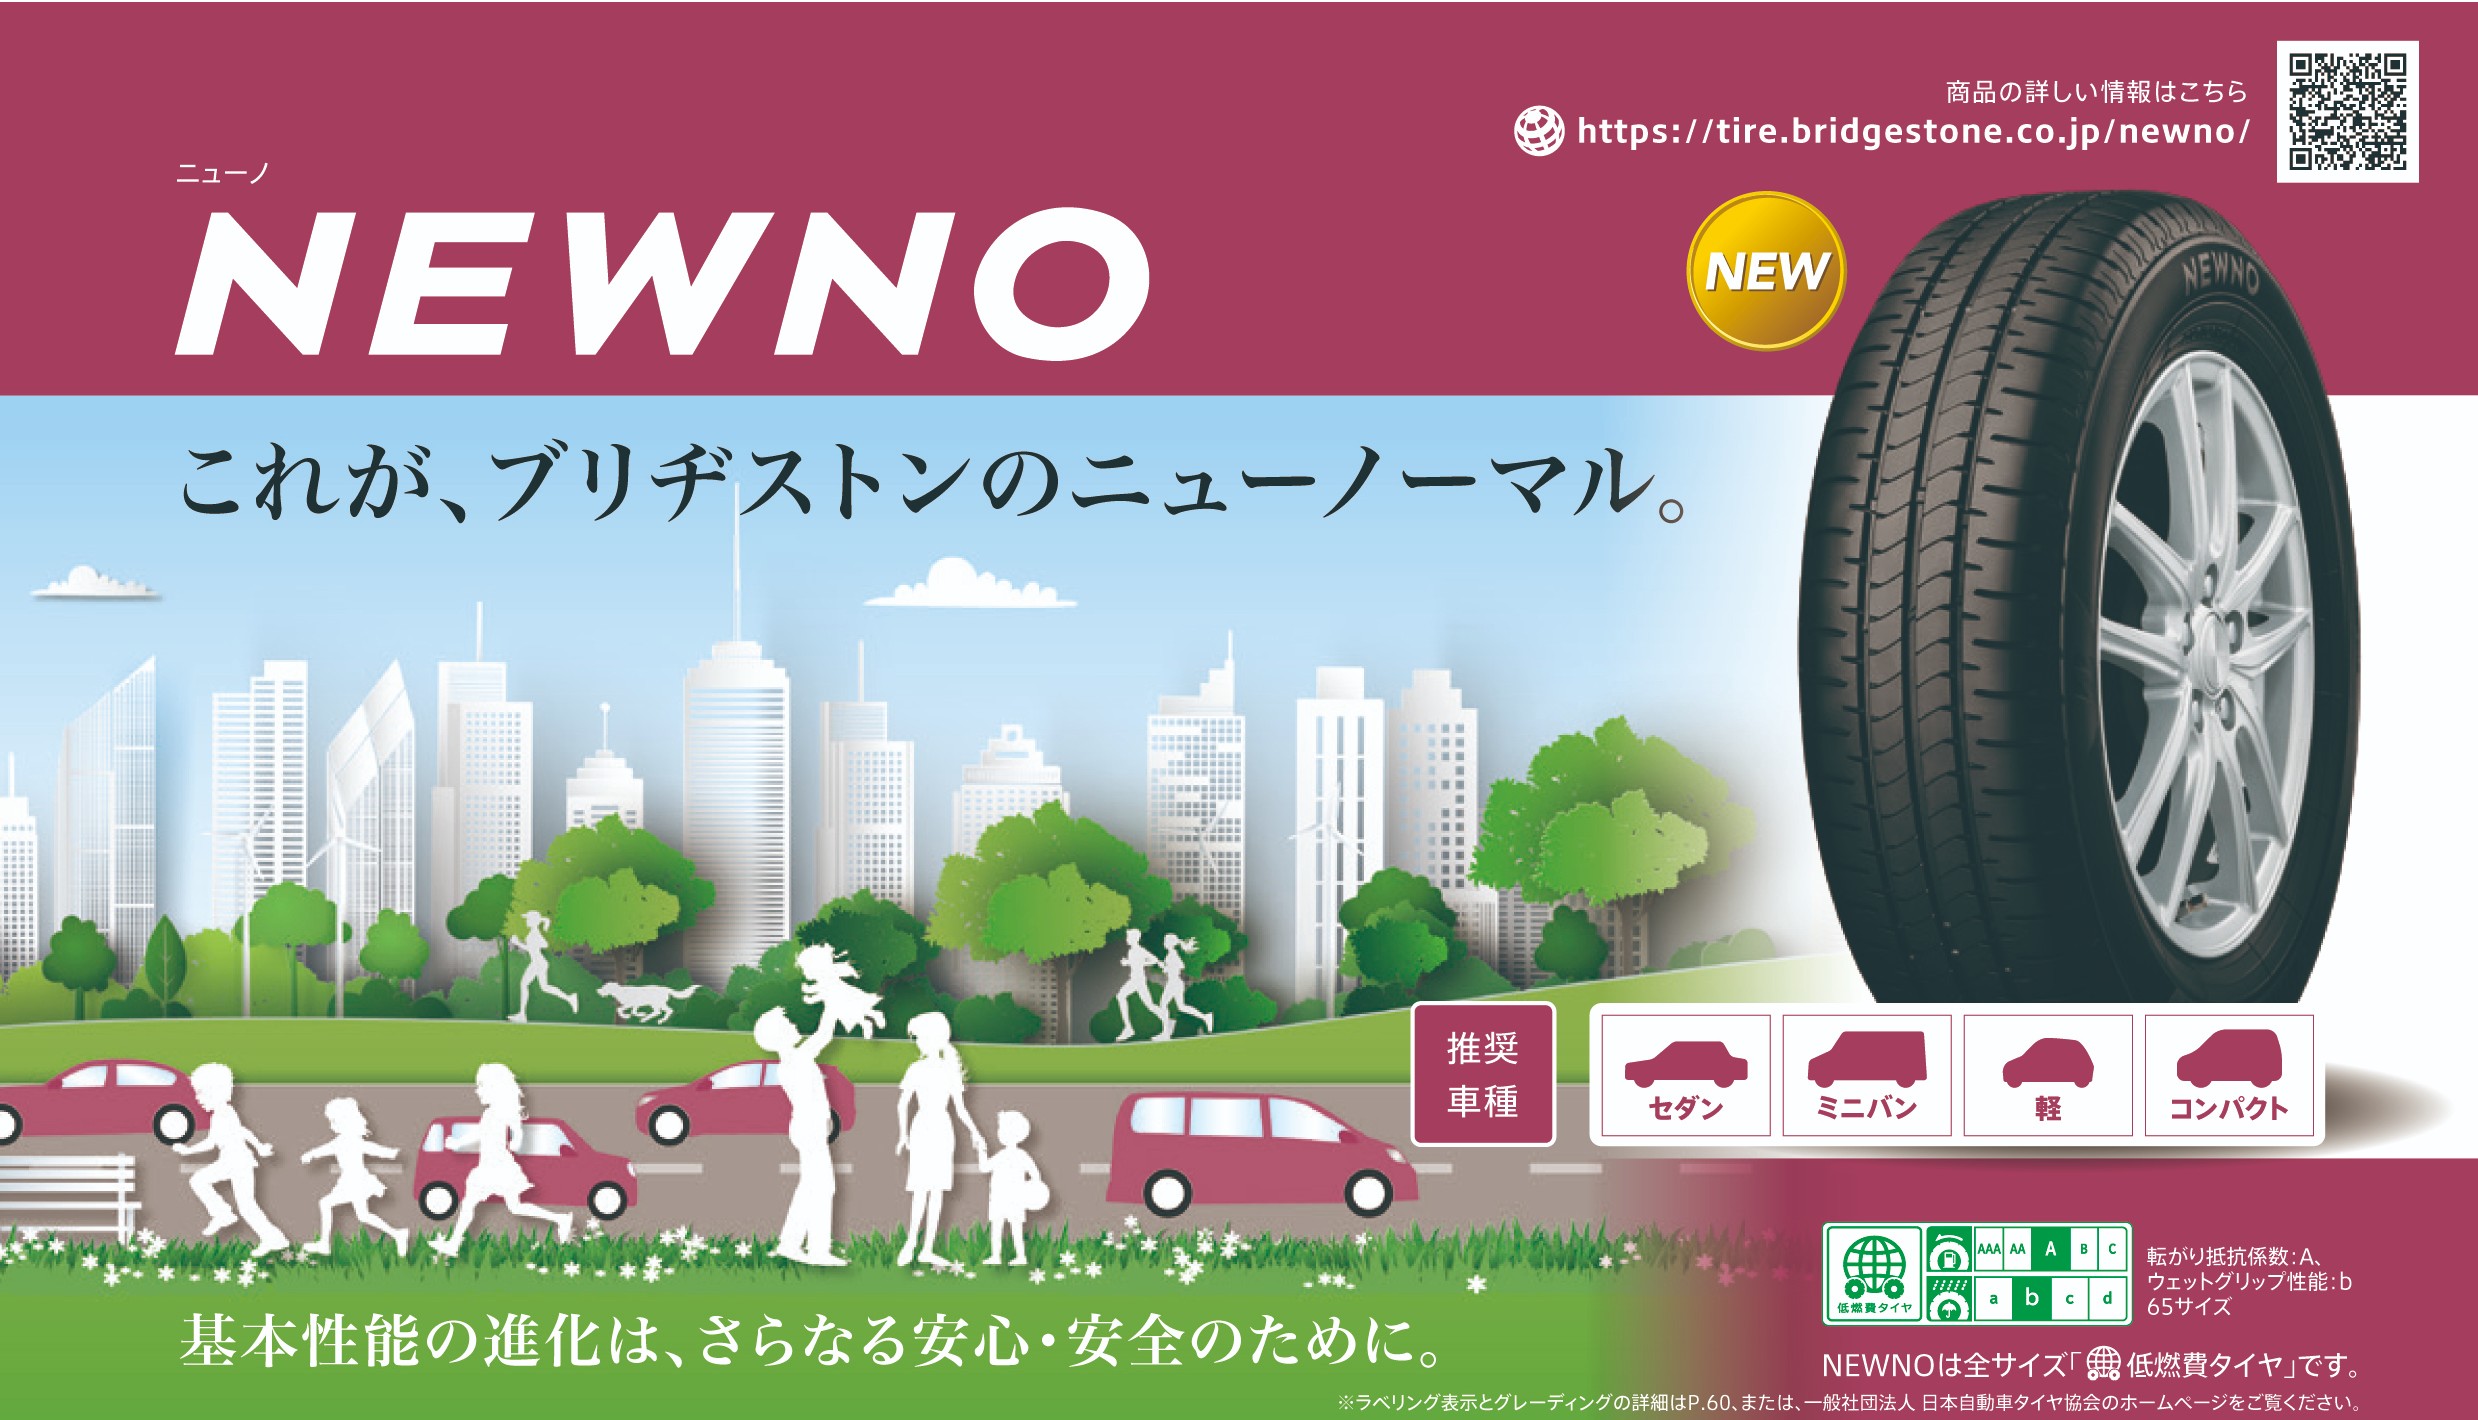 ★NWENO(ニューノ)★ | タイヤ | 商品情報 | タイヤ館 かわごえ